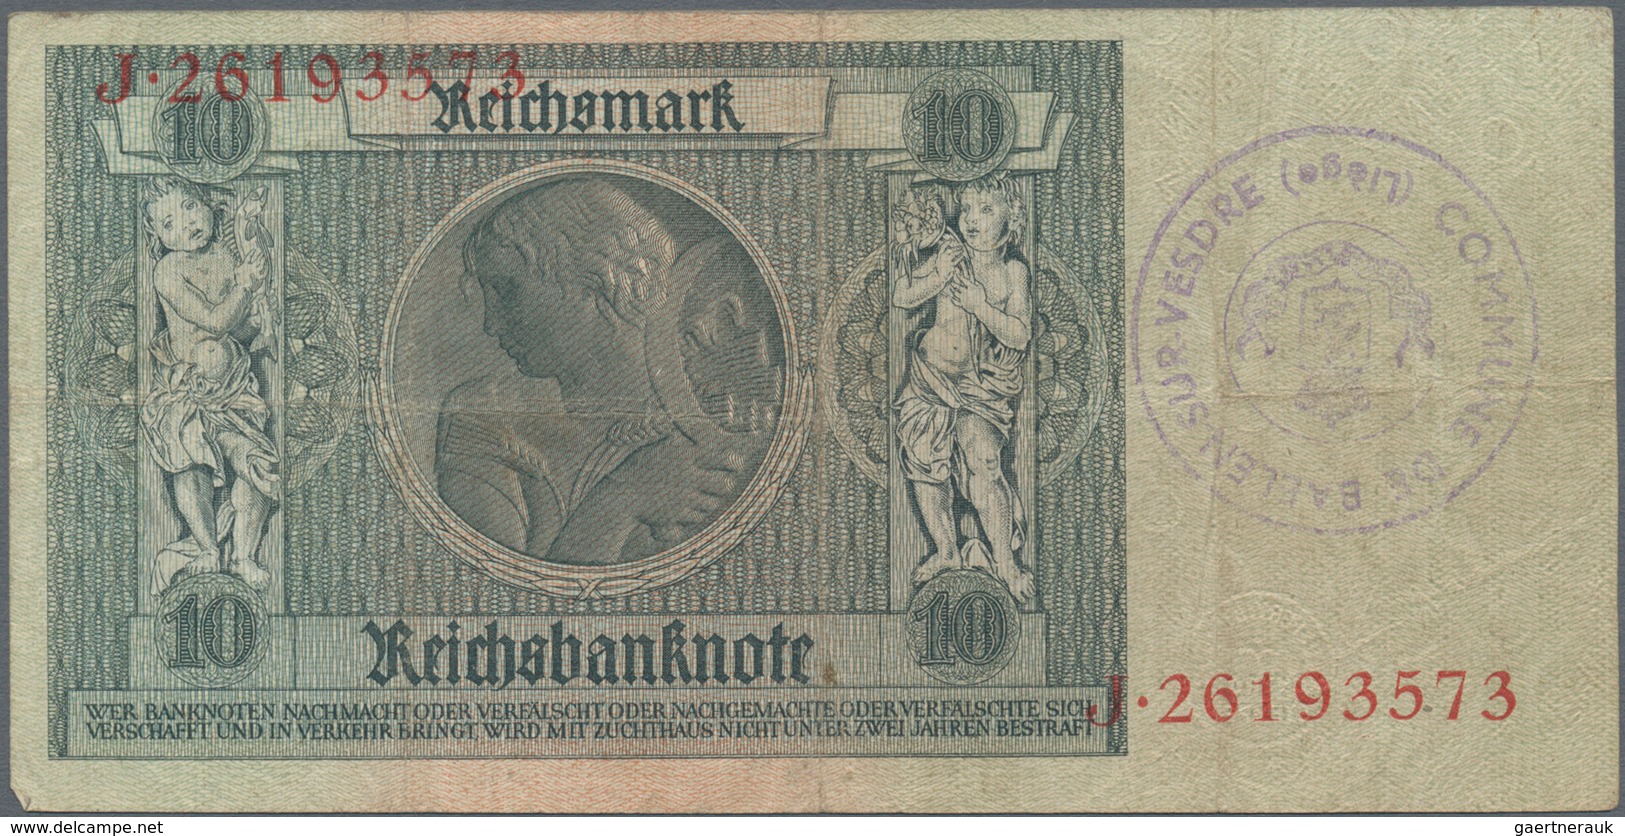 Deutschland - Deutsches Reich bis 1945: Großes Lot mit 25 belgischen Abstempelungen auf 10 Reichsmar